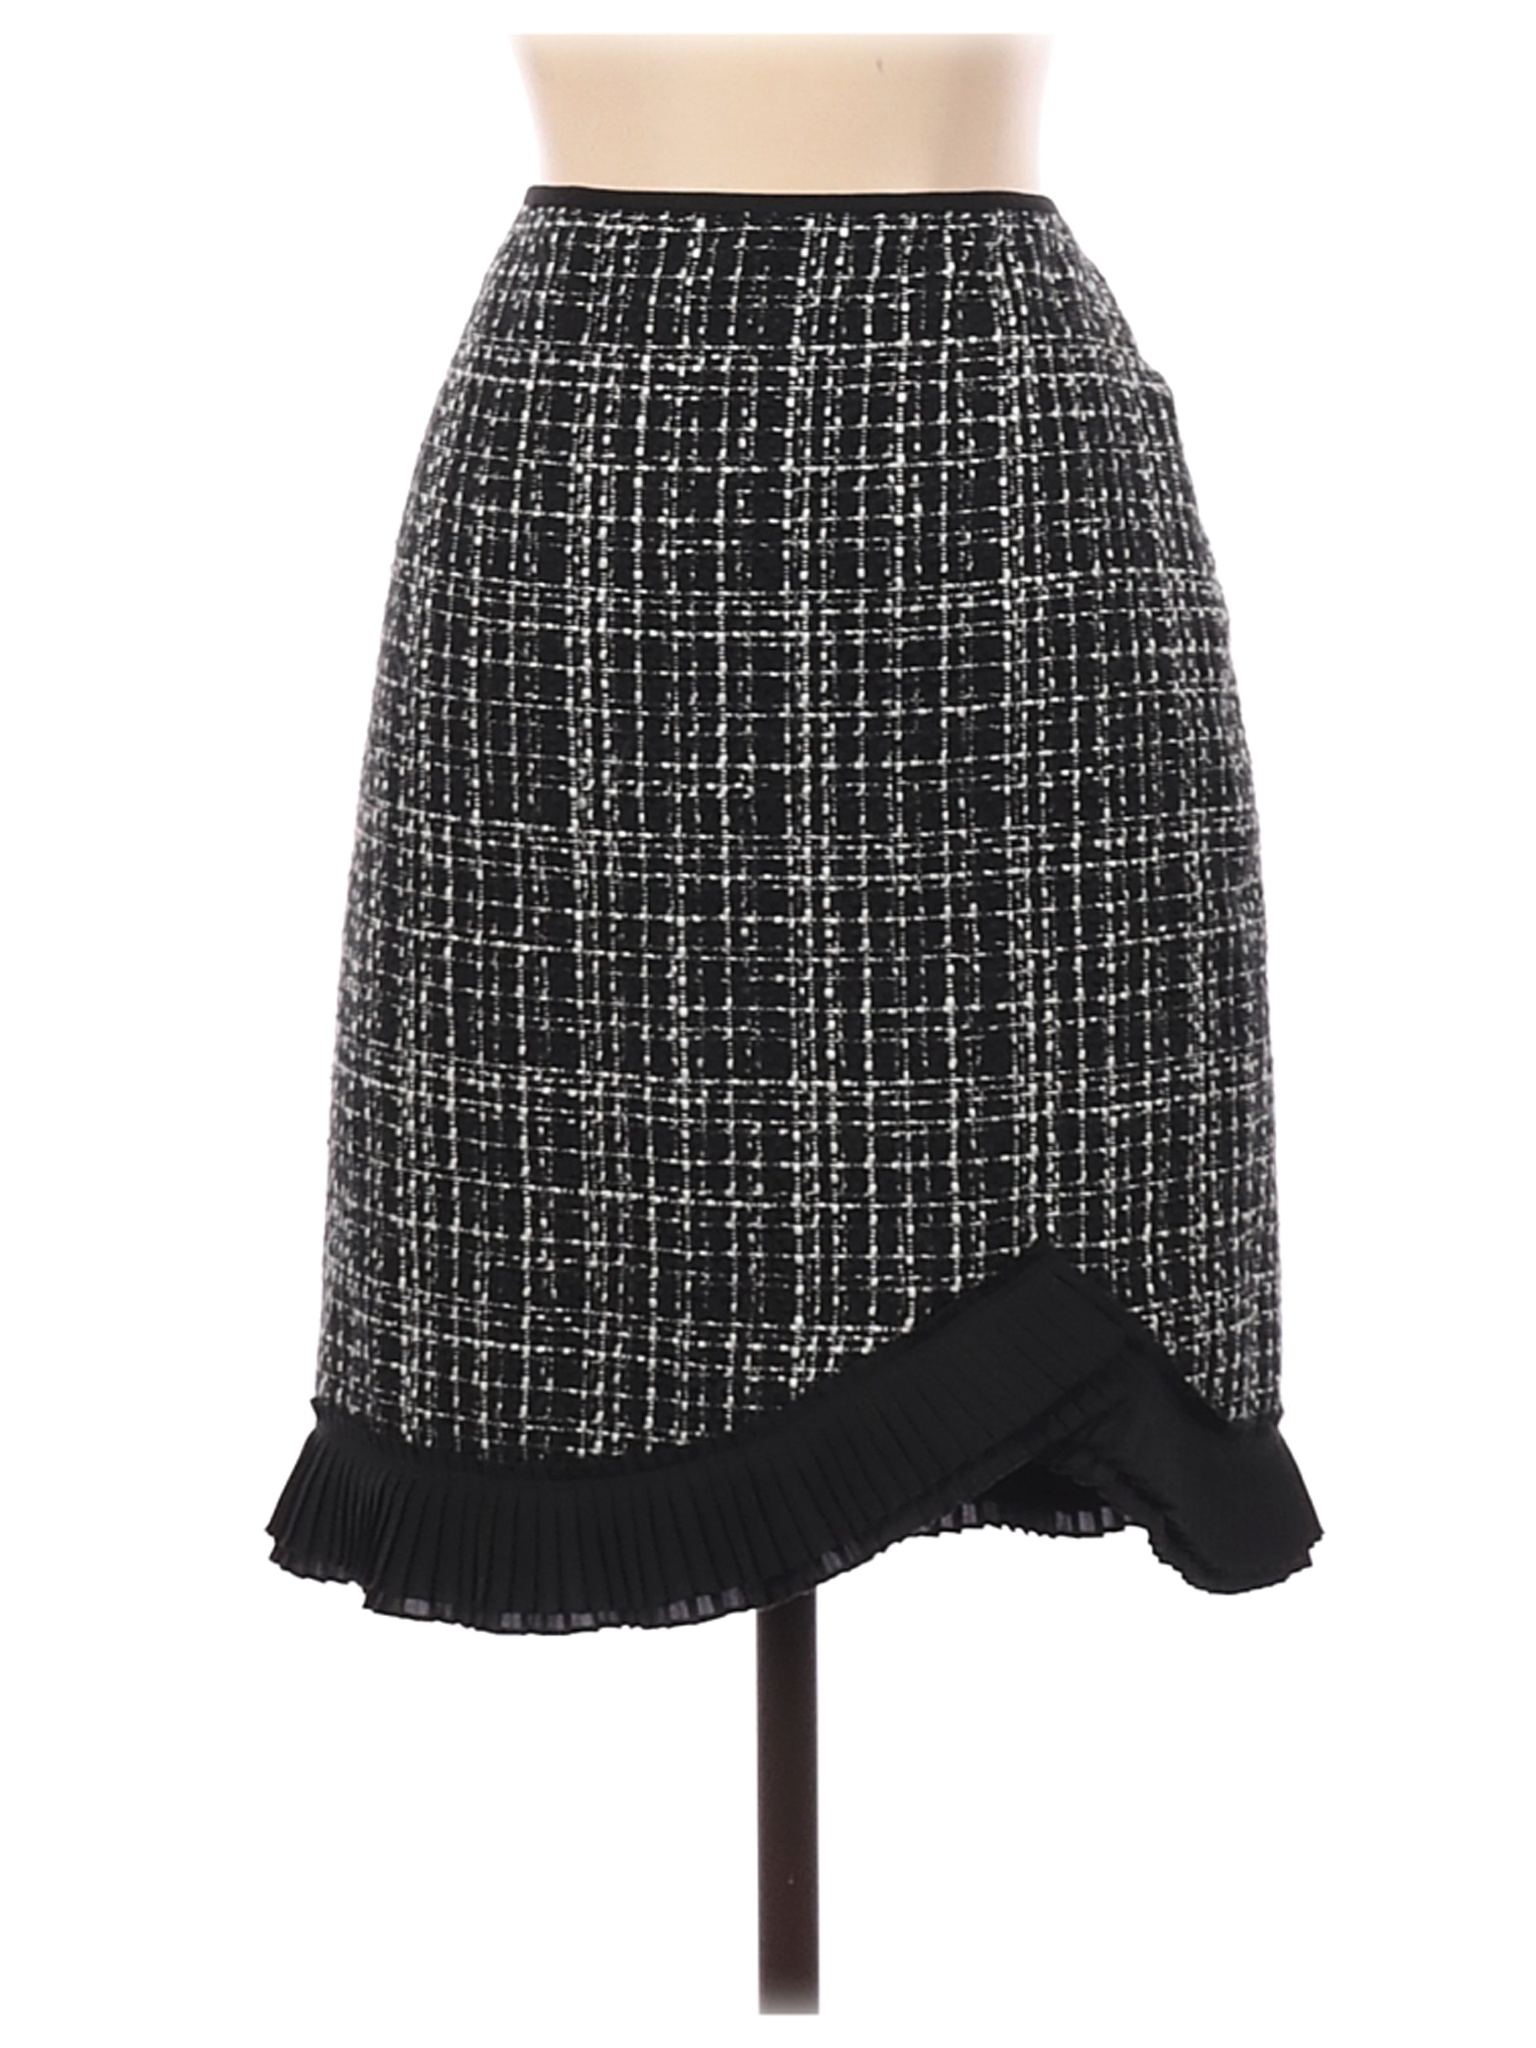 White House Black Market Women Black Casual Skirt 2 | eBay